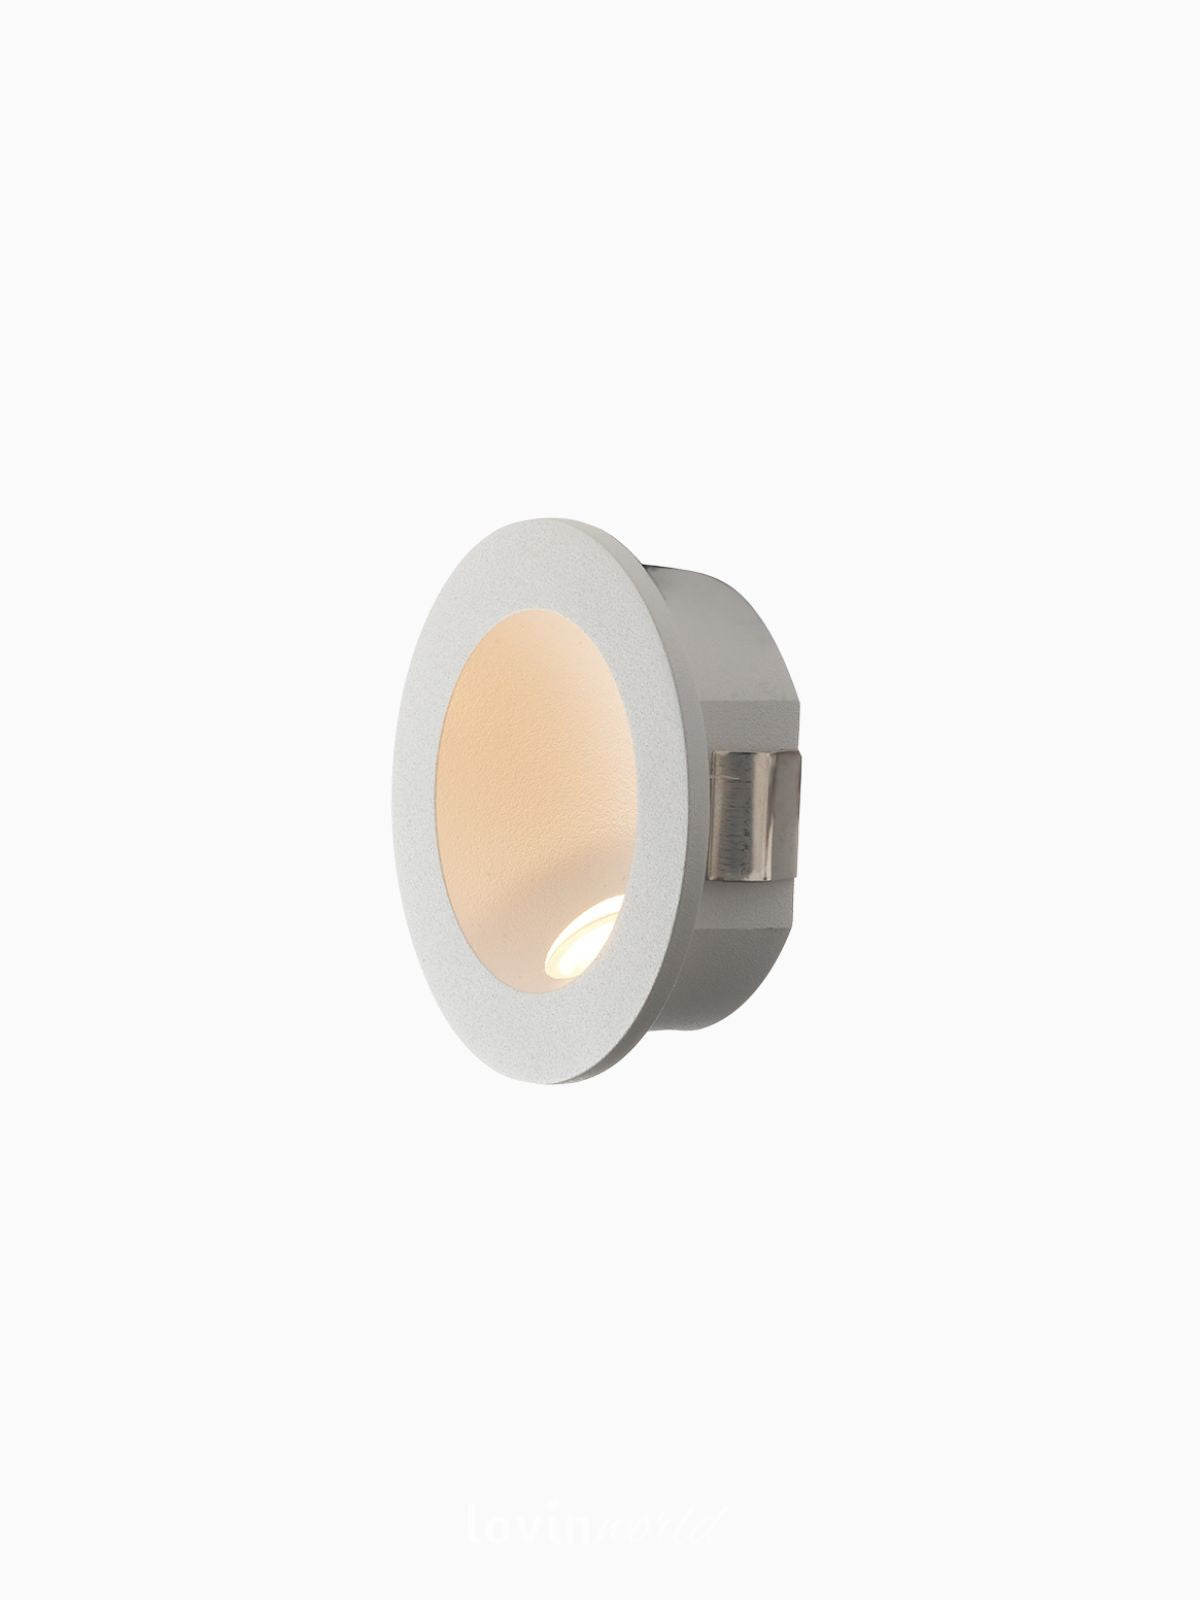 Segnapassi da esterno LED Onyx rotondo in alluminio, colore bianco-1